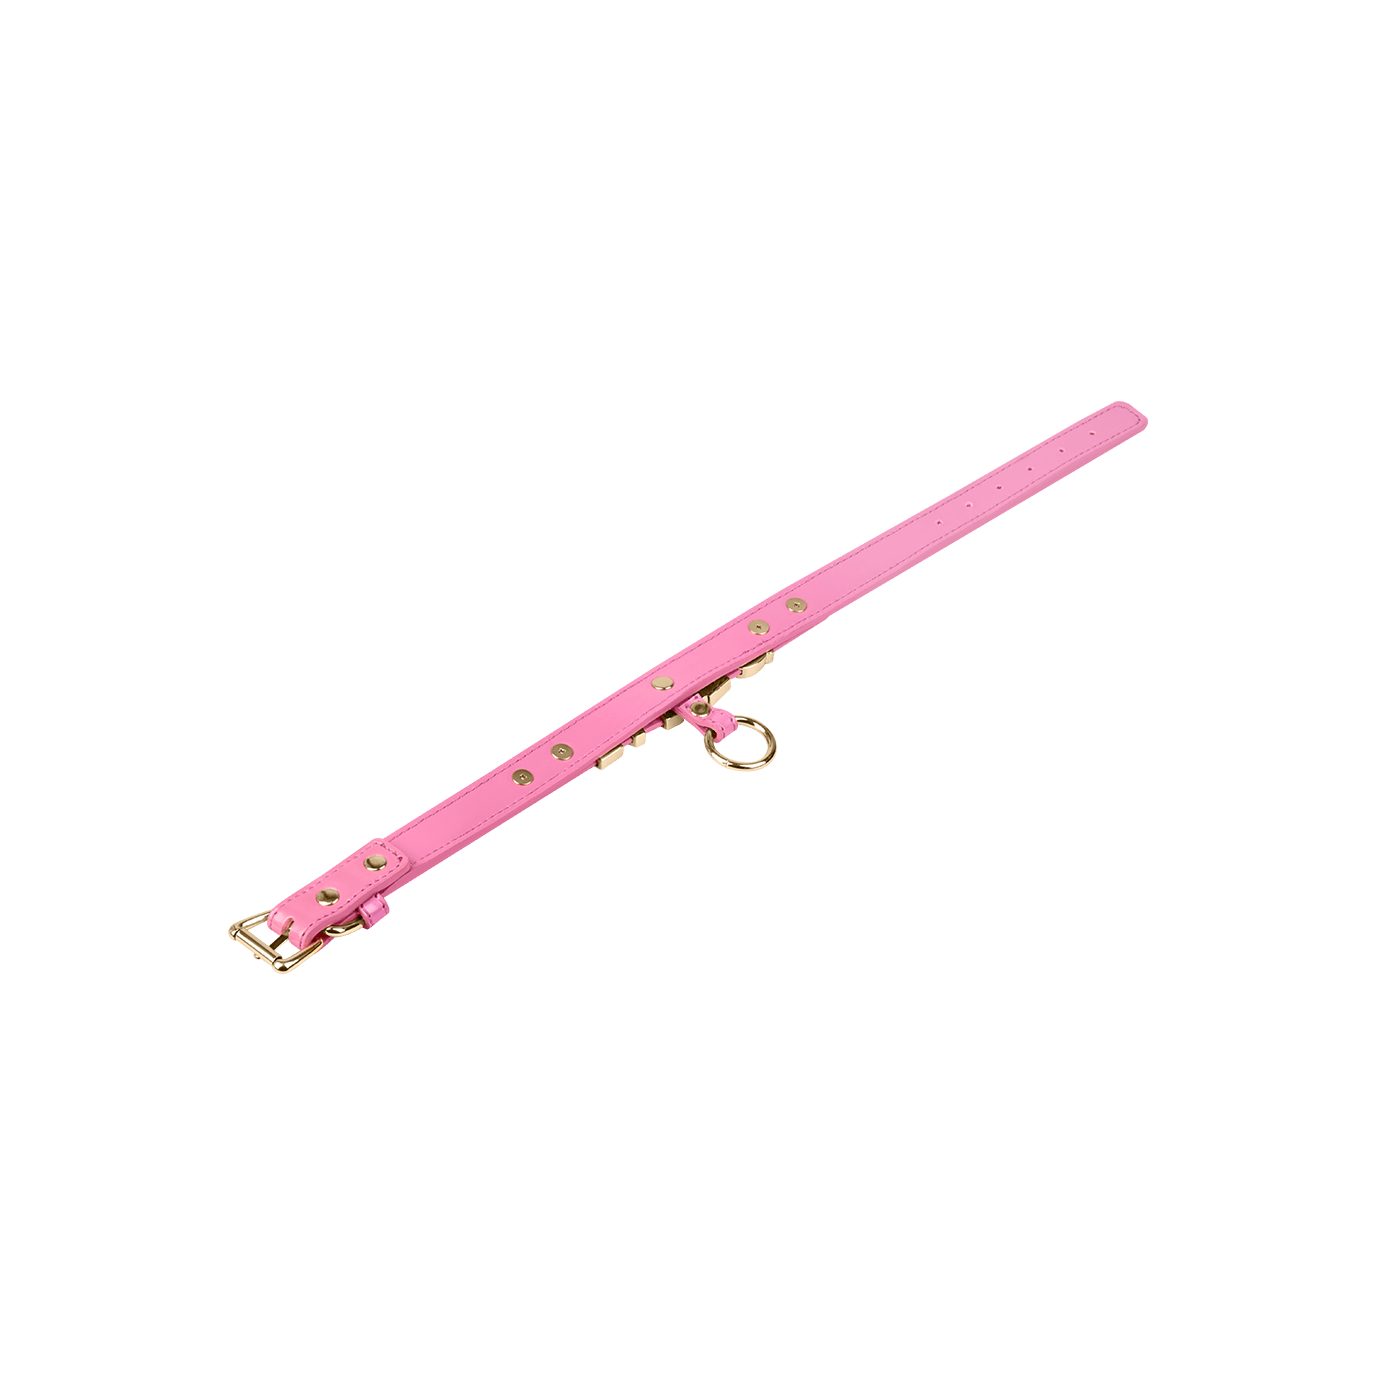 EIS mit O-Ring, Erotik-Halsband pink im 'Slave-Halsband Paare EIS für Lederlook', Sex-Spielzeug